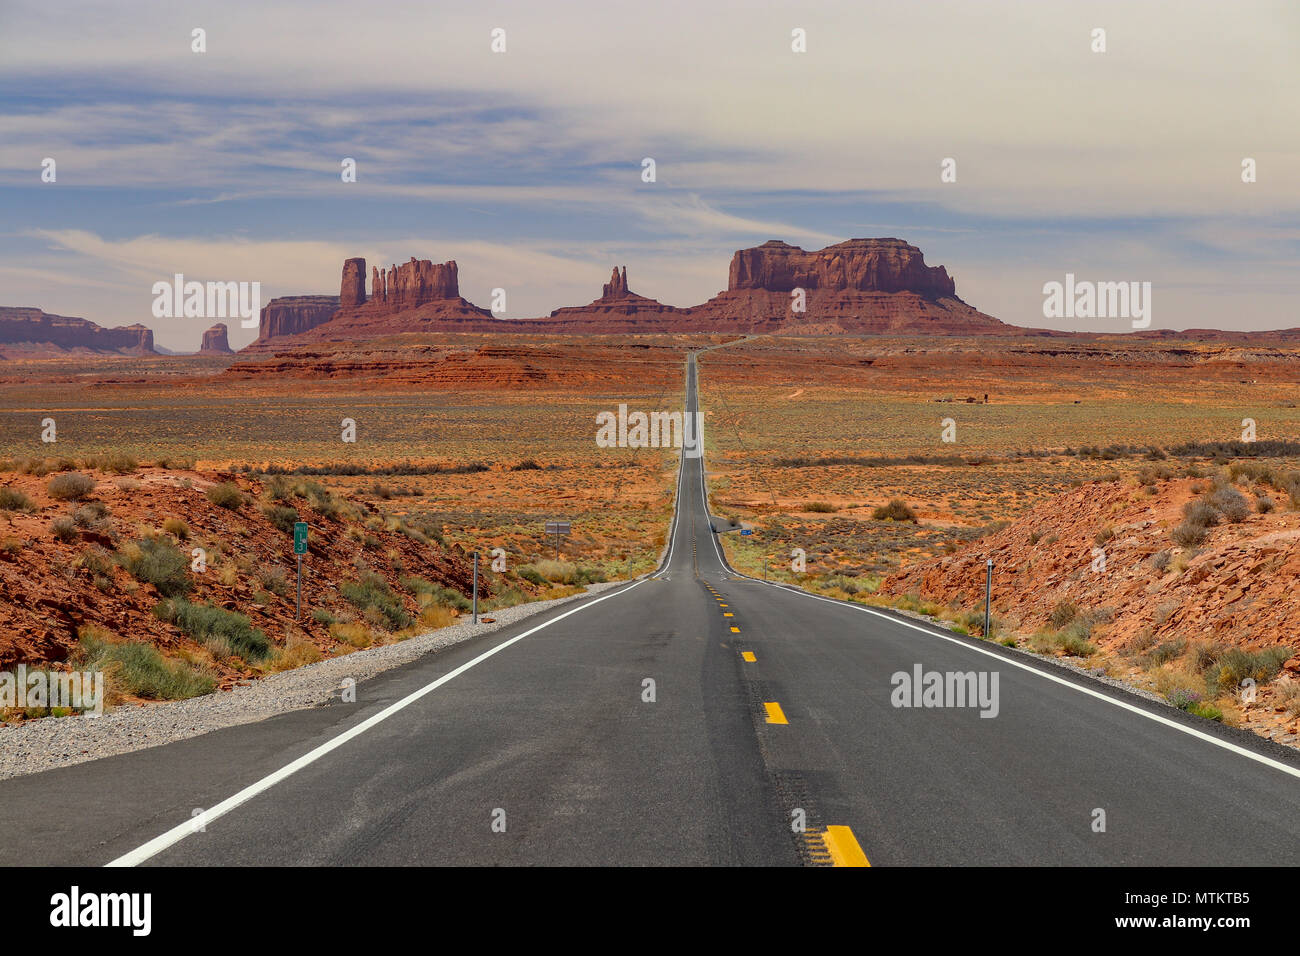 Dieser berühmte Highway 163 wird in Richtung der Denkmäler in Utah und Arizona. Wüste Tal American West Stockfoto